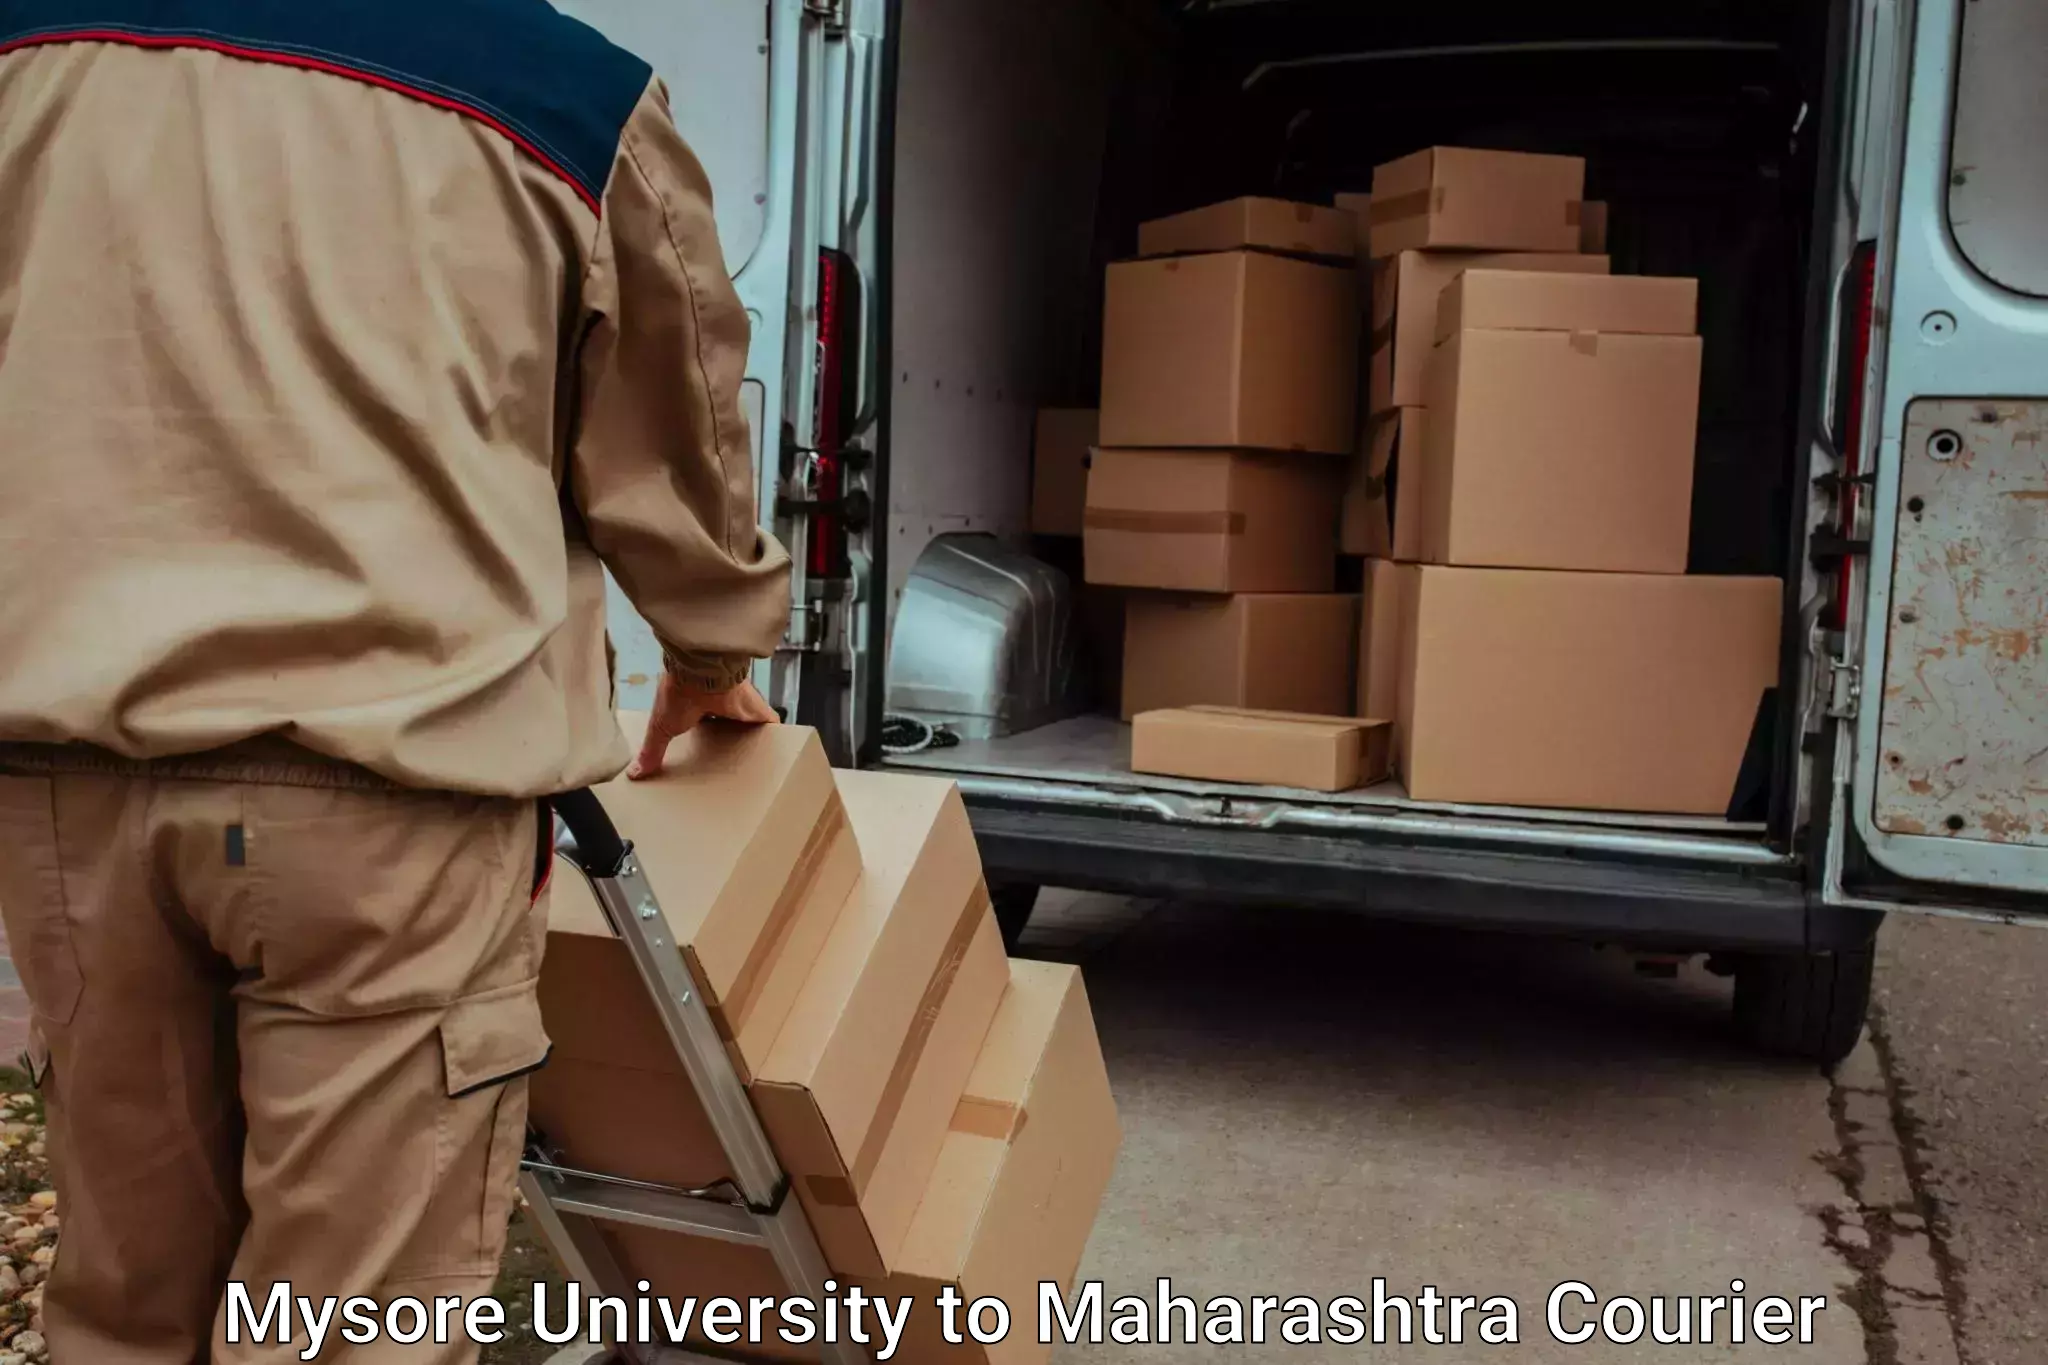 Baggage shipping service Mysore University to Maharashtra